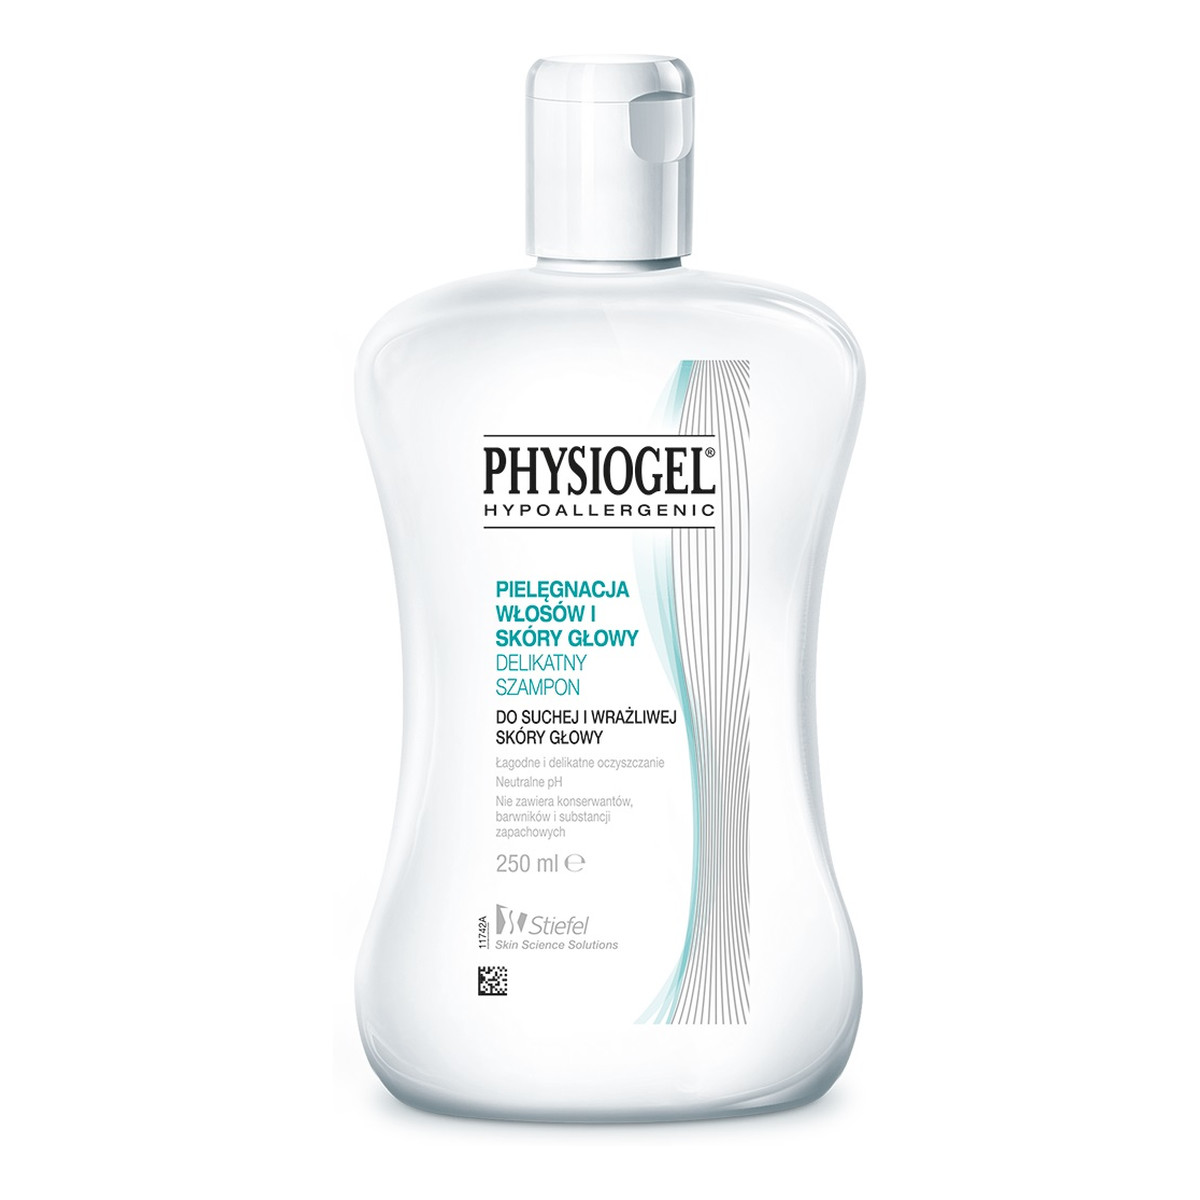 Physiogel delikatny szampon do suchej i wrażliwej skóry głowy 250ml